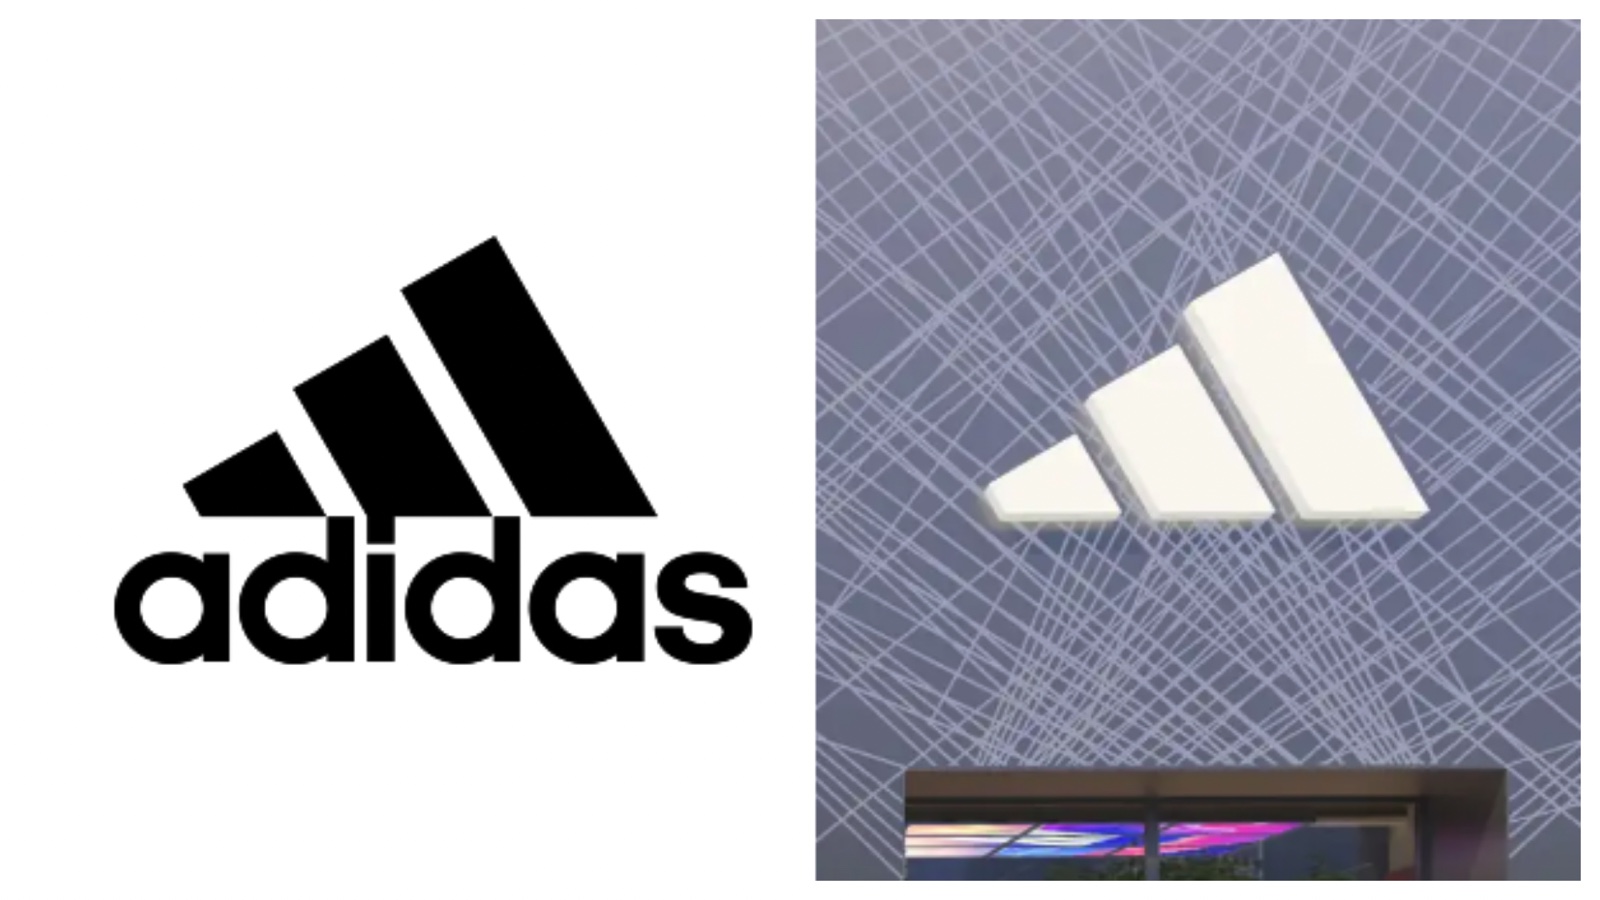 Adidas âm thầm thiết kế lại logo theo hướng tối giản hơn • RGB